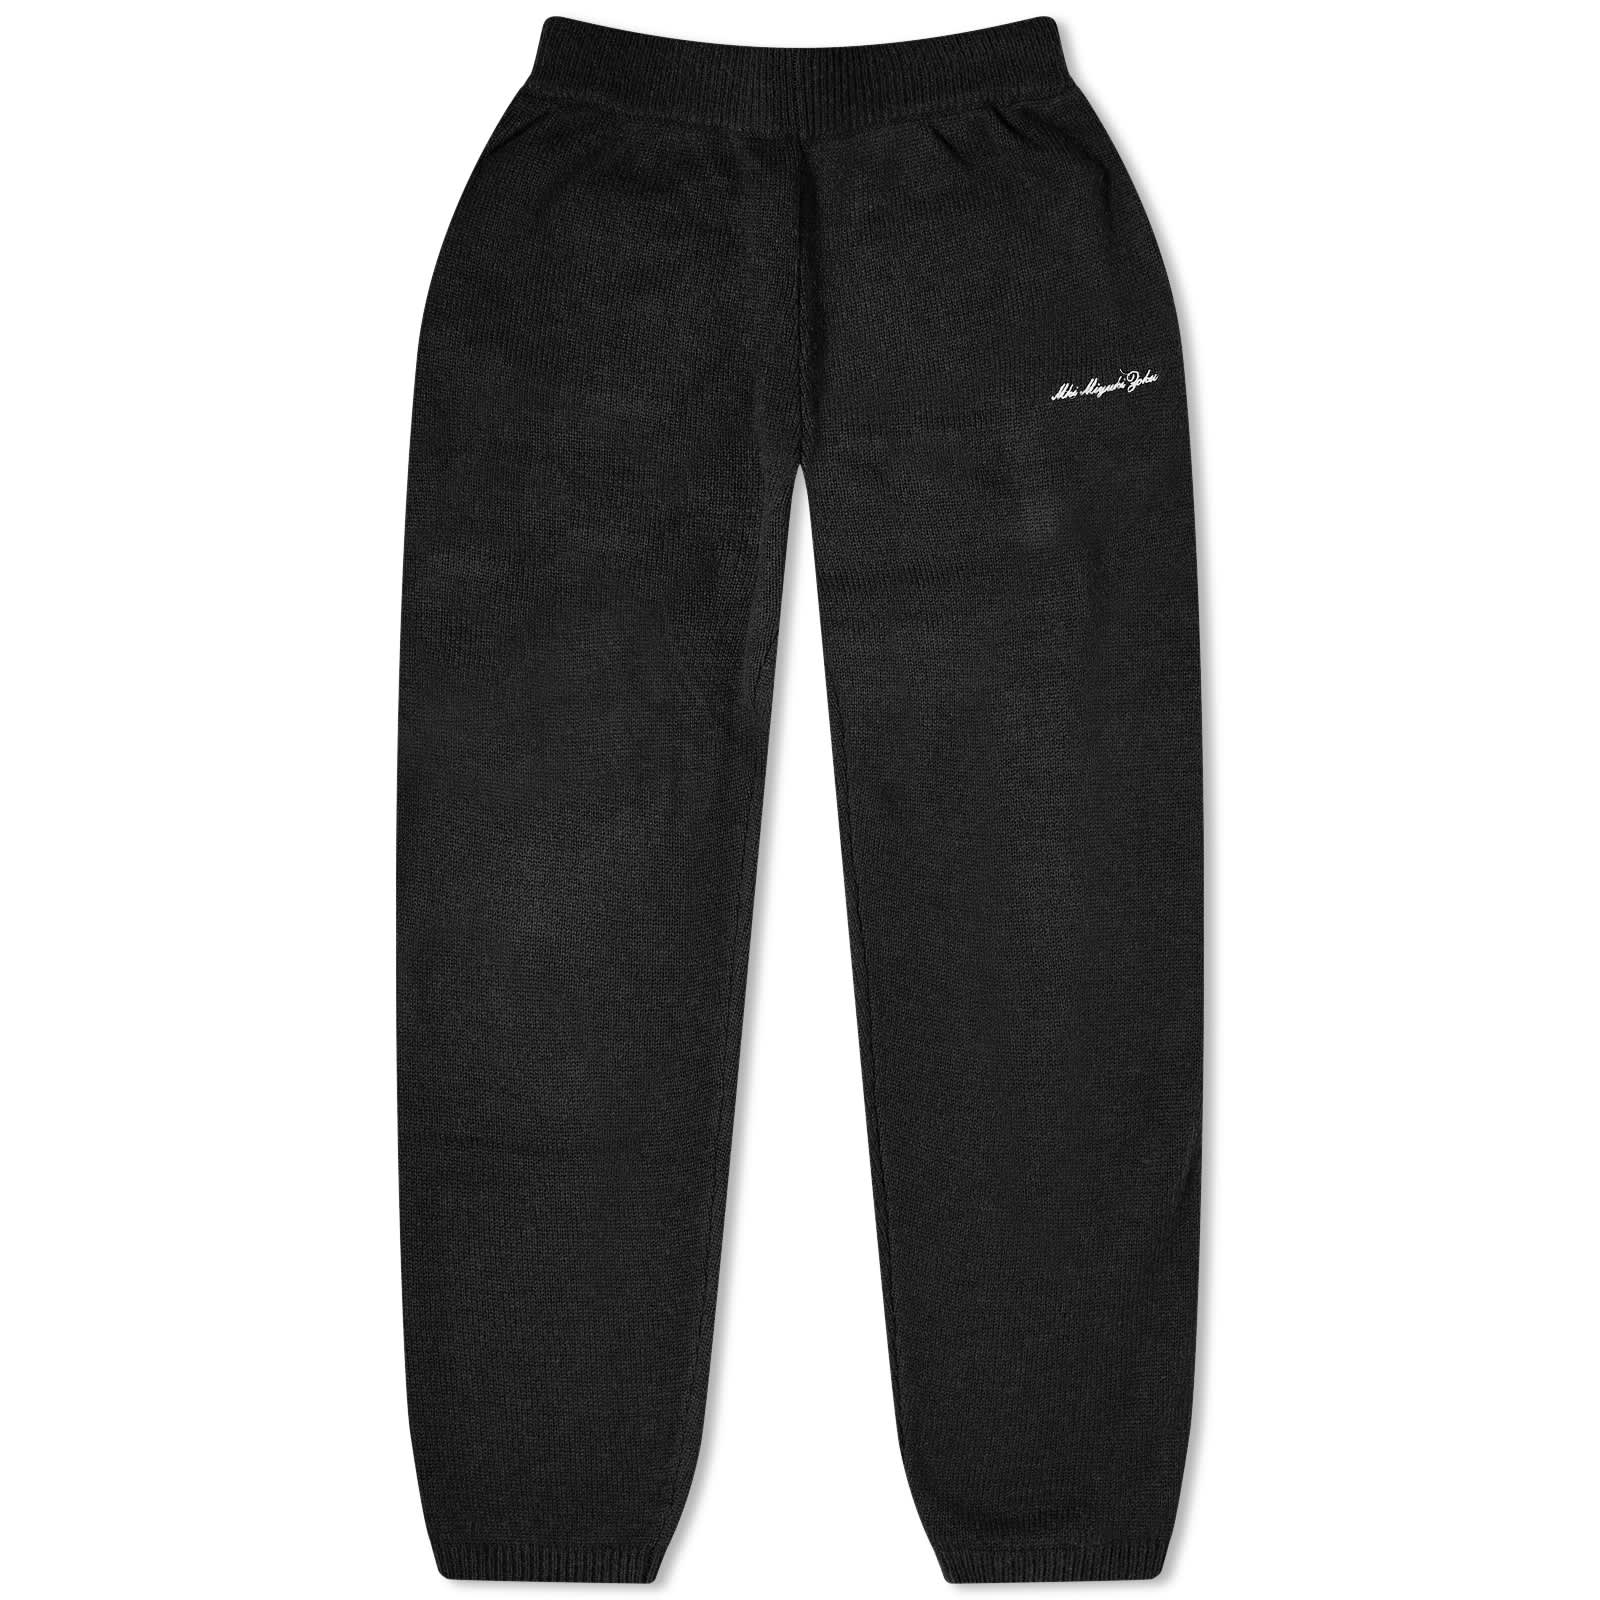 Спортивные брюки Mki Mohair Blend Knit, черный штаны вязаные акриловые на 6 7 лет